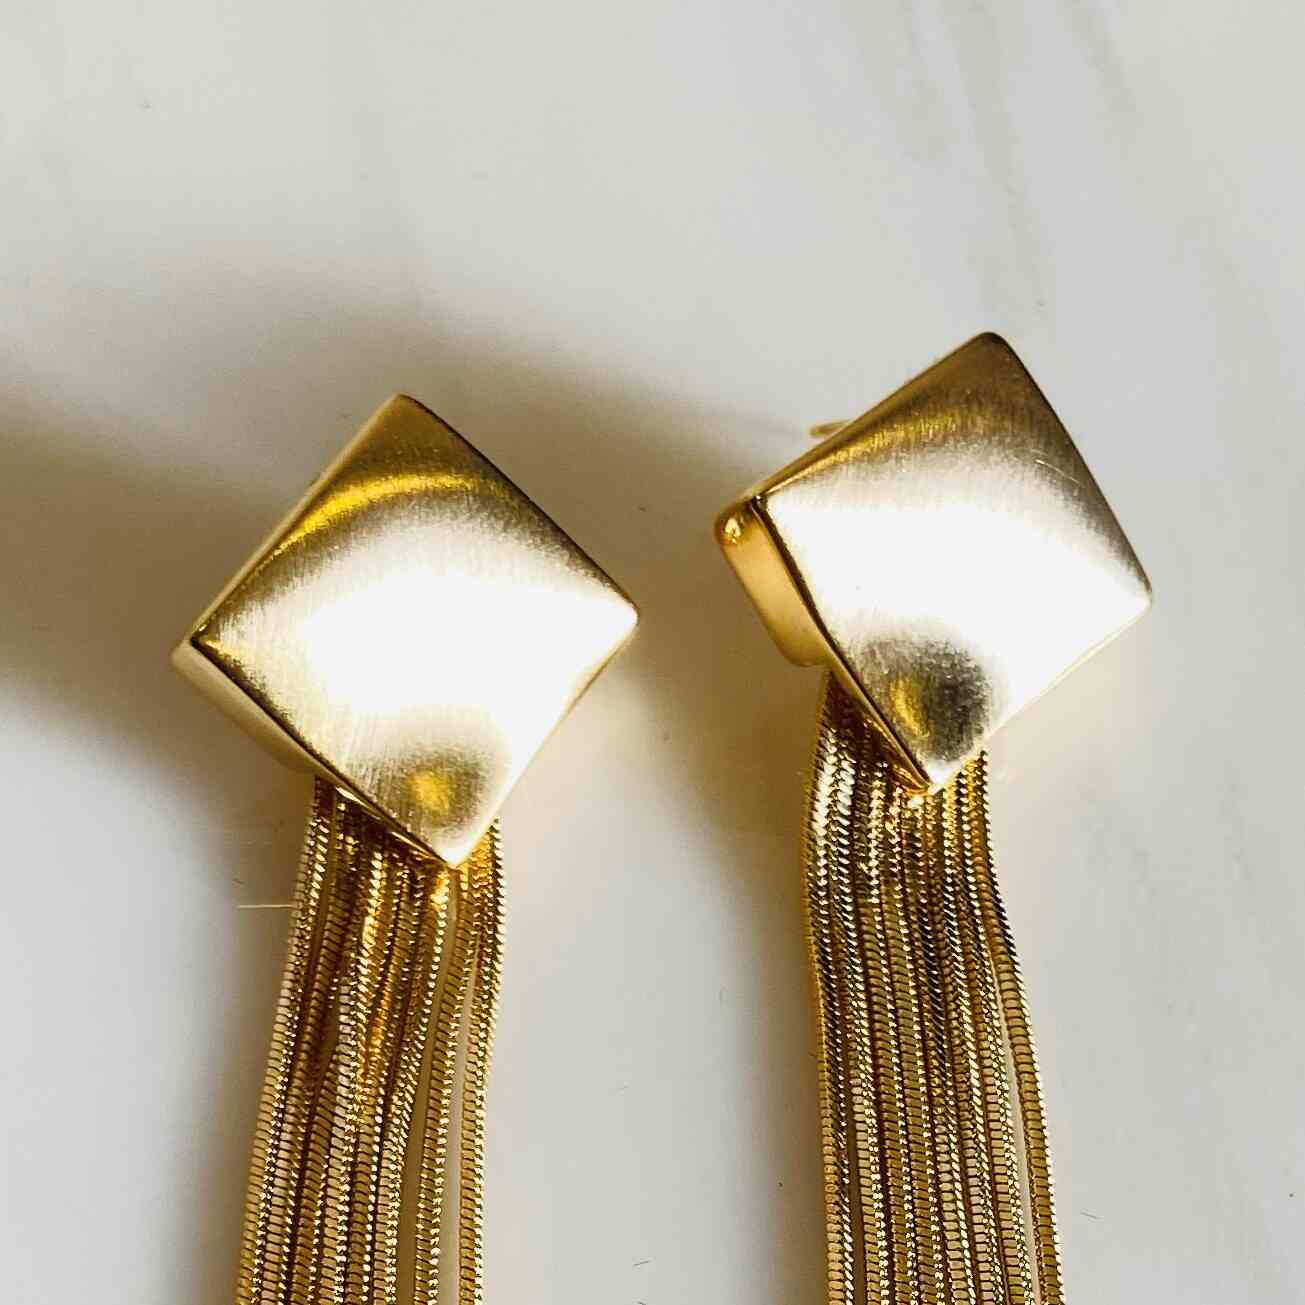 10 Best Silver Earrings Review - The Jerusalem Post